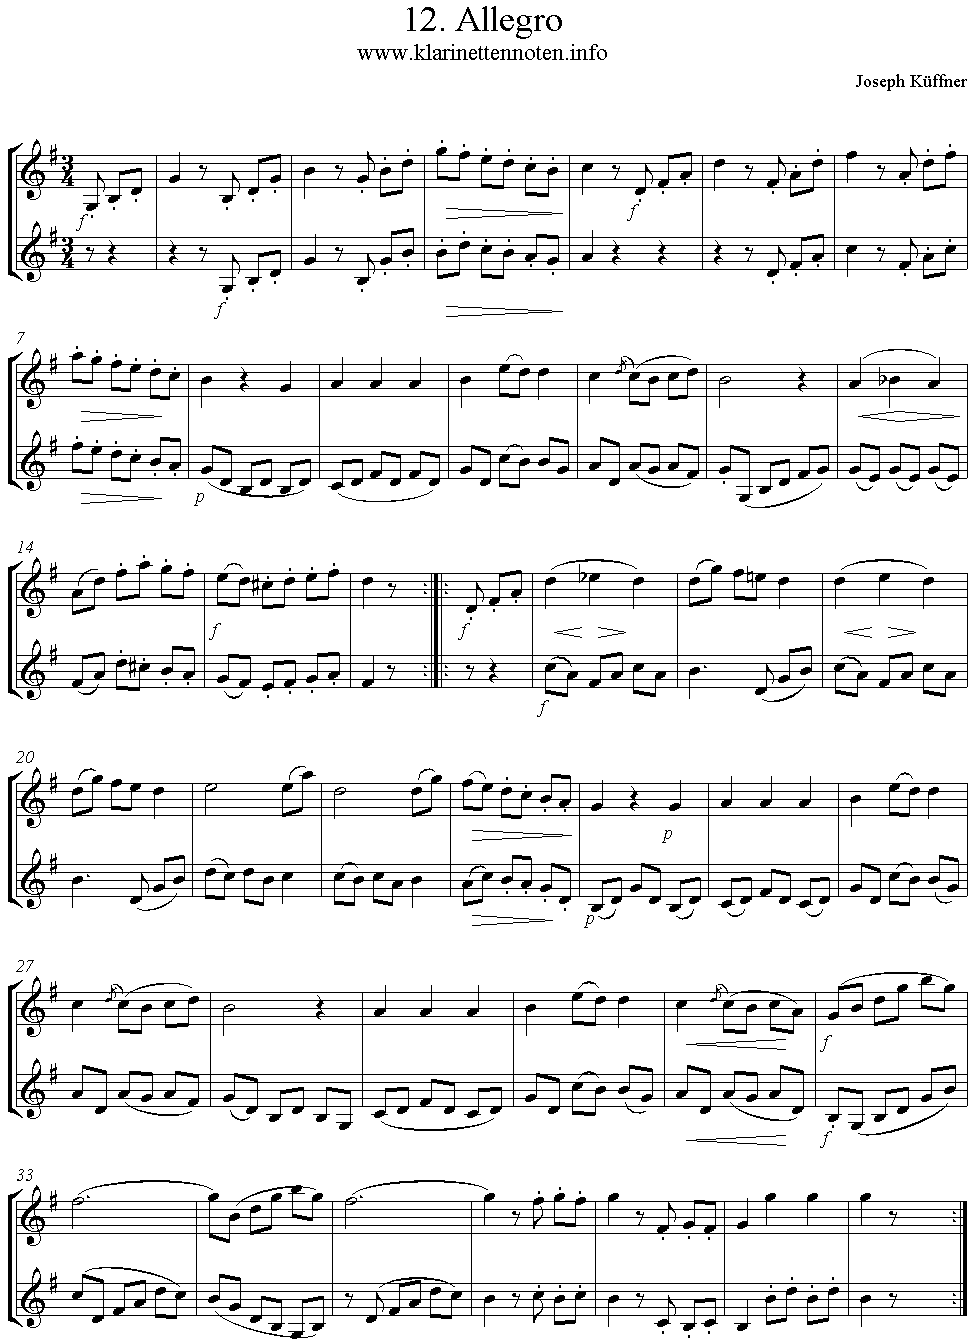 24 instruktive Duette- Joseph Küffner -12 Allegro